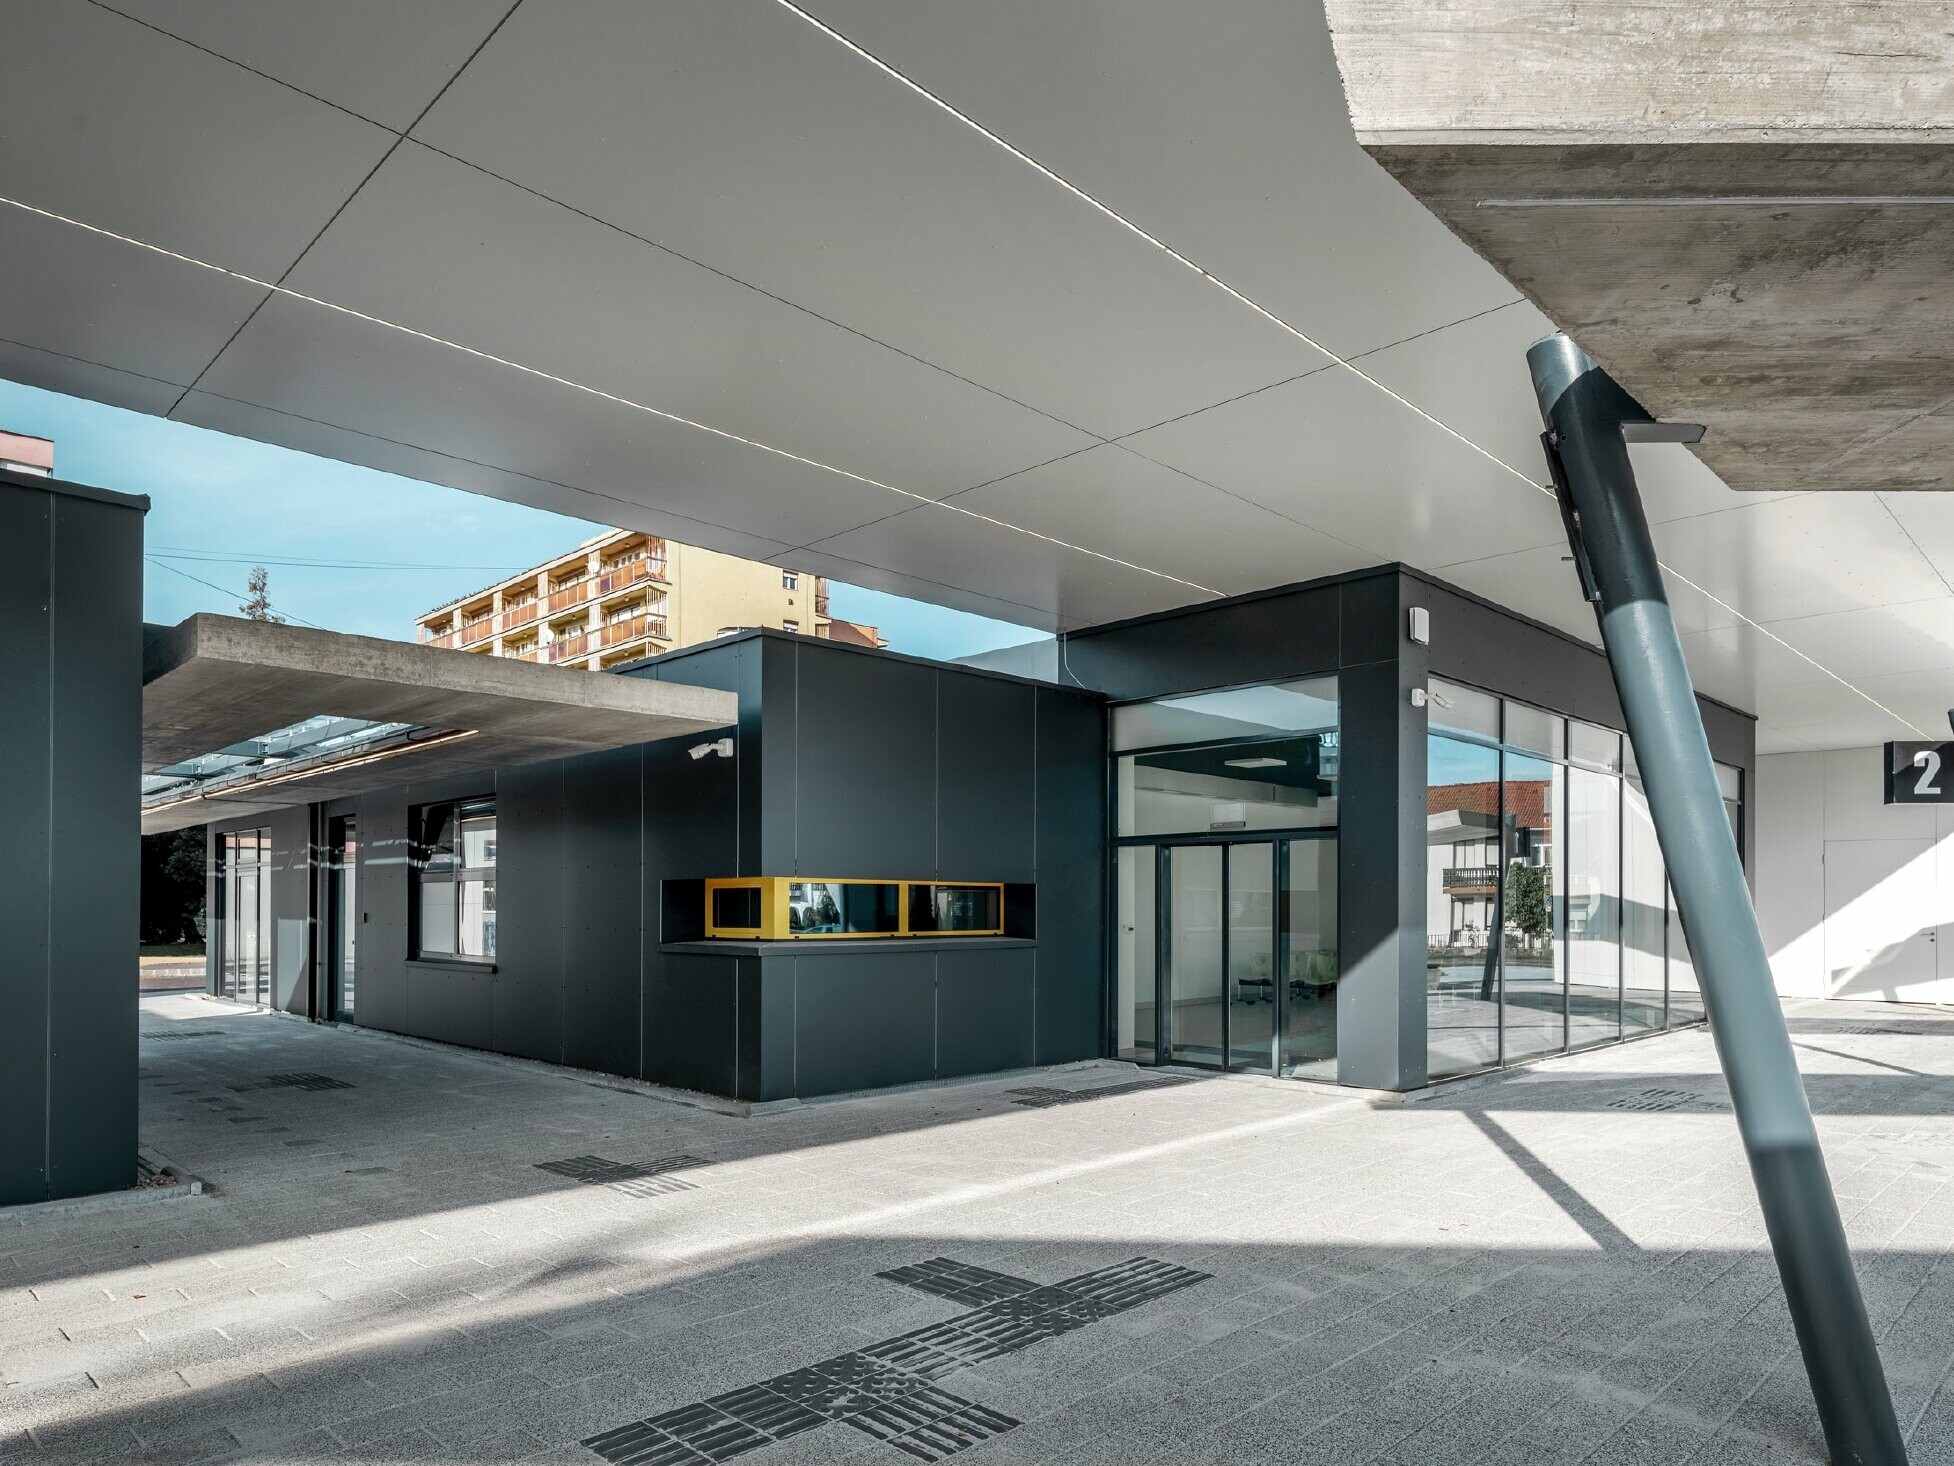 Überdachter Bereich des Busbahnhofs Lenti; Die Untersicht der Überdachung ist mit PREFABOND Verbundplatte in Reinweiß verkleidet, die Fassadenelemente beim Eingangsbereich in P.10 Anthrazit.